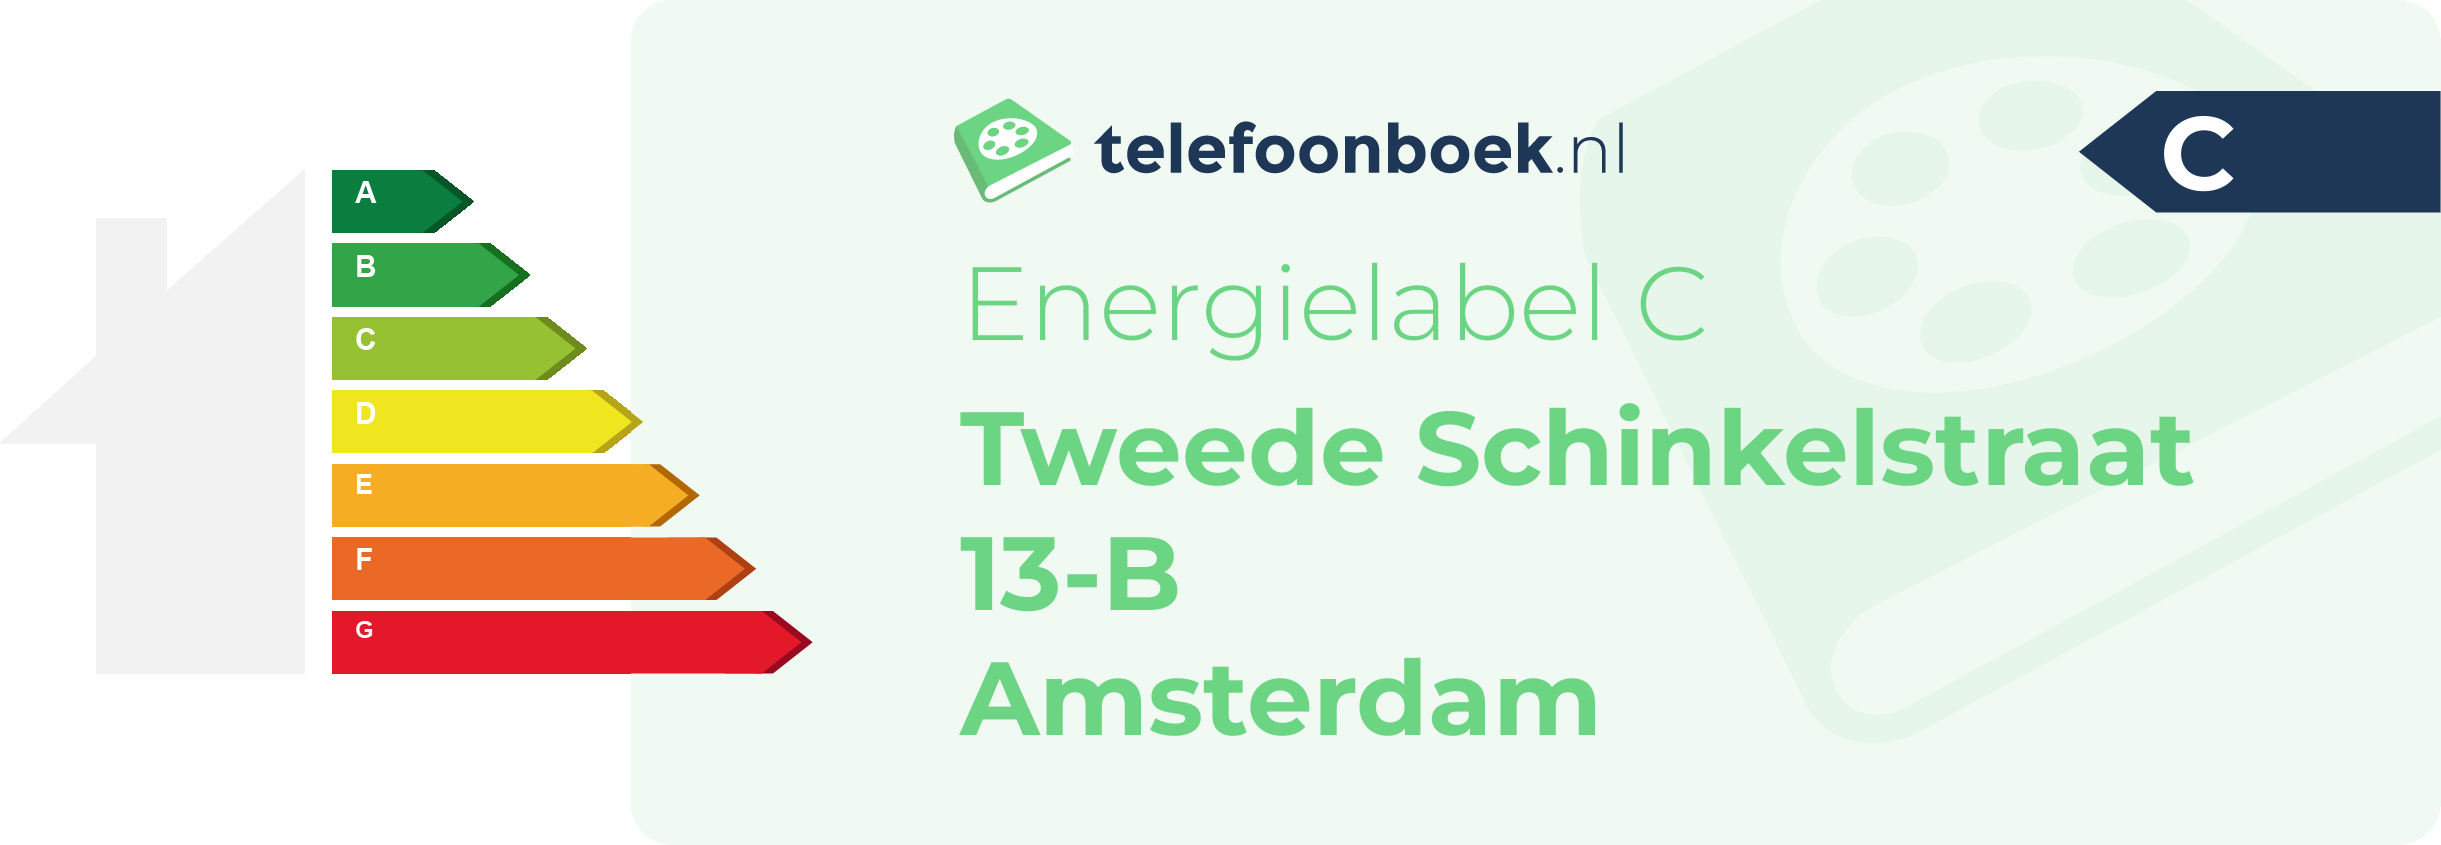 Energielabel Tweede Schinkelstraat 13-B Amsterdam